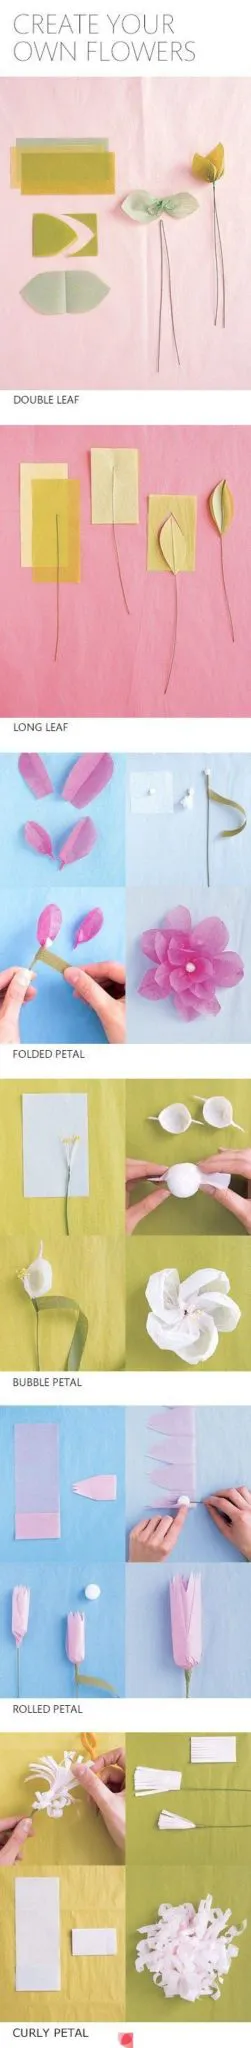 Sencillas flores de papel cometa explicadas a pasos